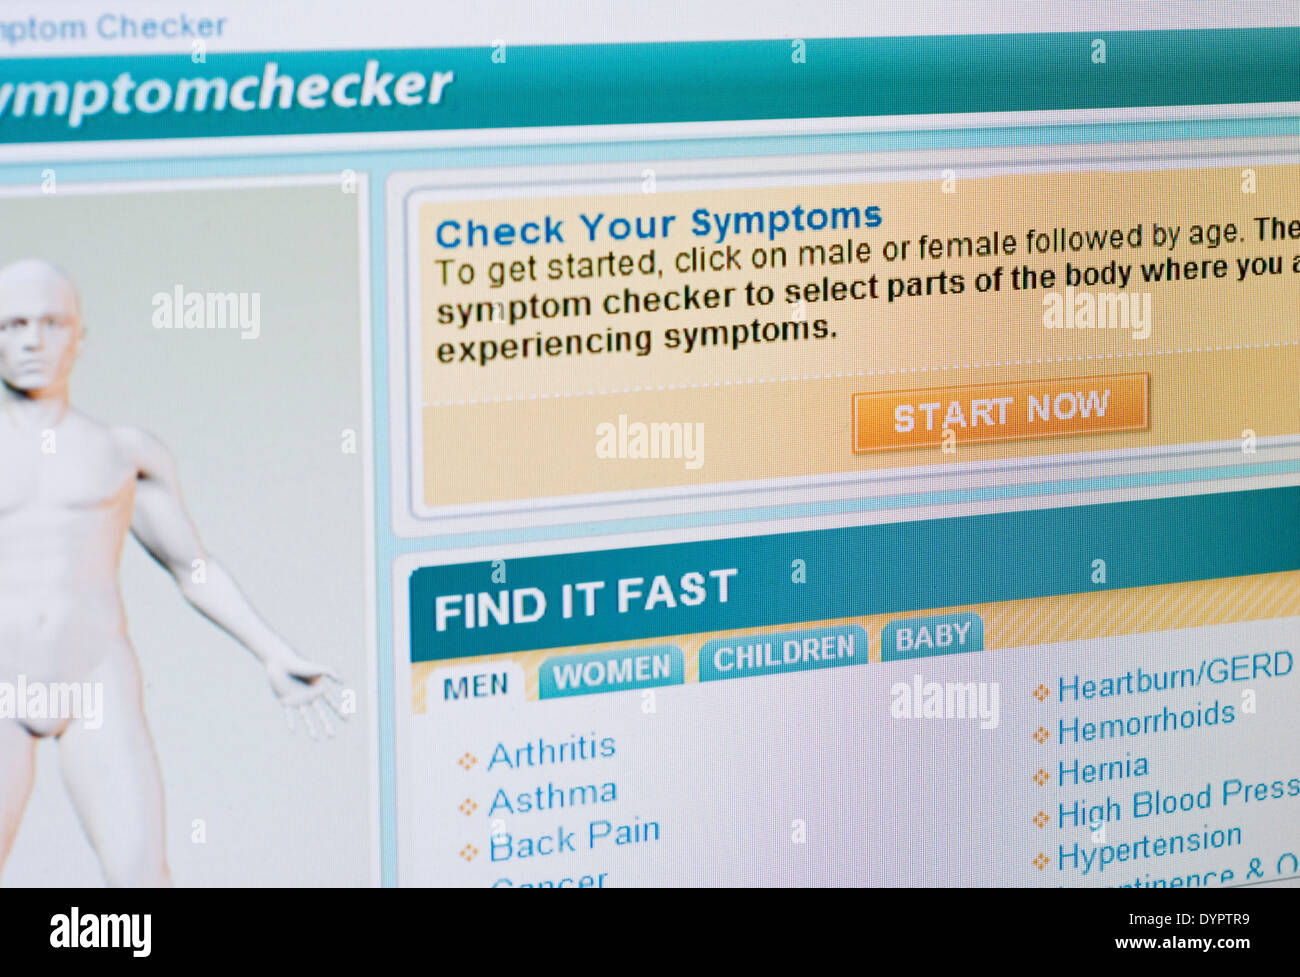 Symptome-Checker-screenshot Stockfoto